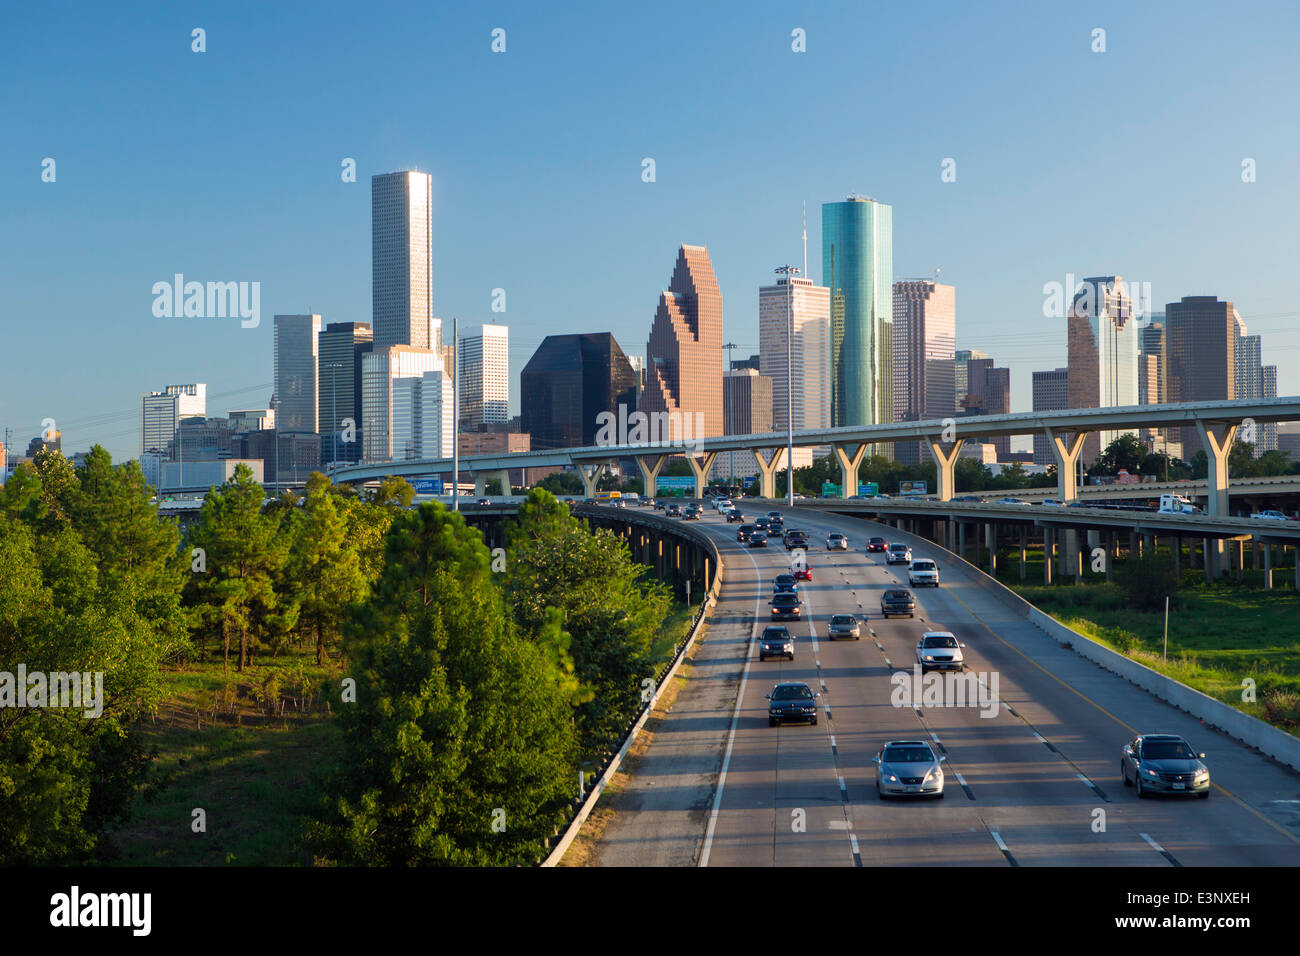 Le centre-ville de Houston, Texas, États-Unis d'Amérique Banque D'Images